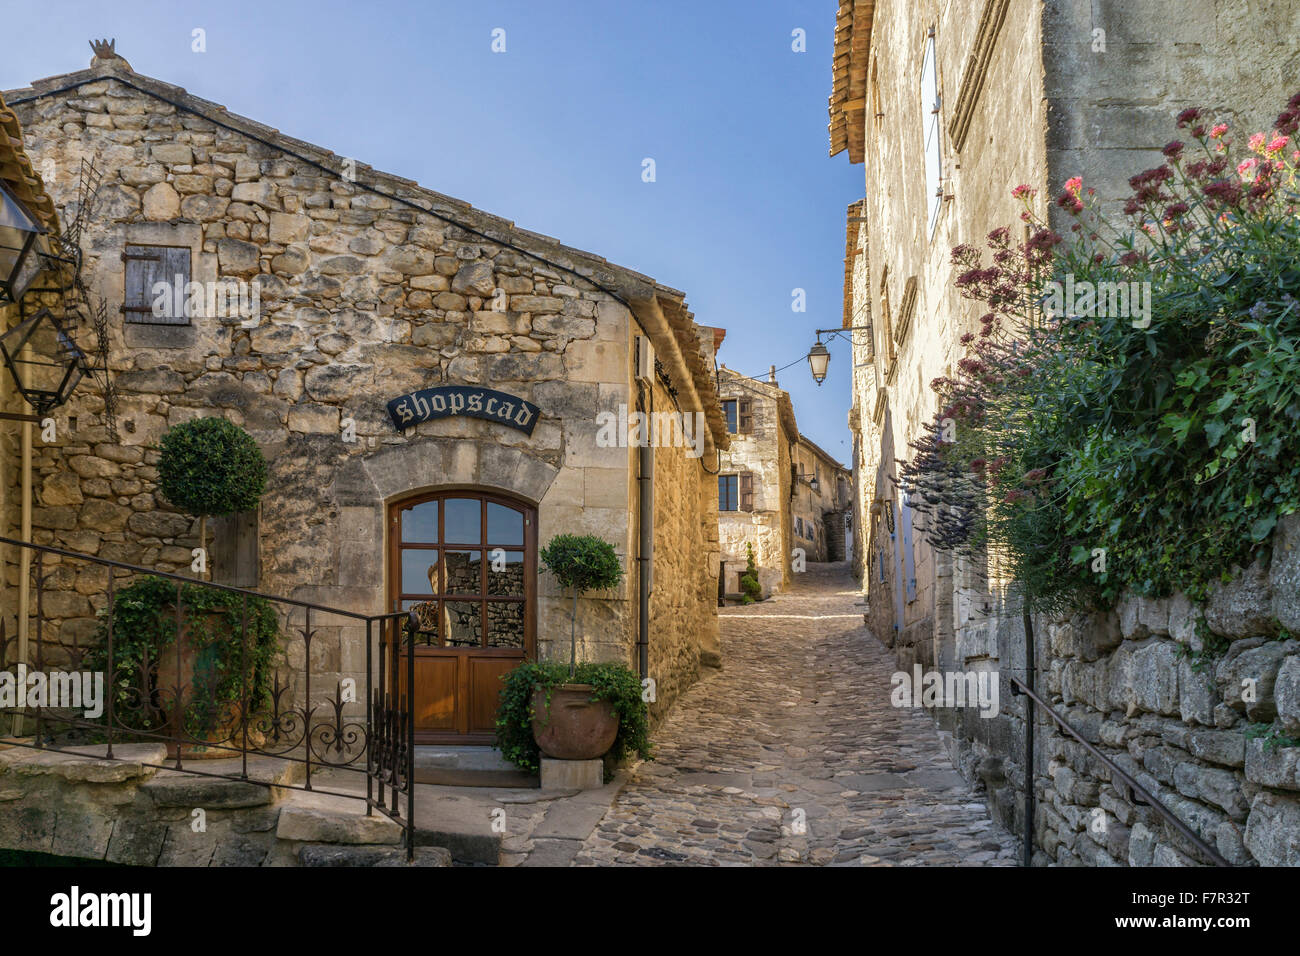 Calle de la aldea de Lacoste, Provenza, Francia Fotografía de stock - Alamy